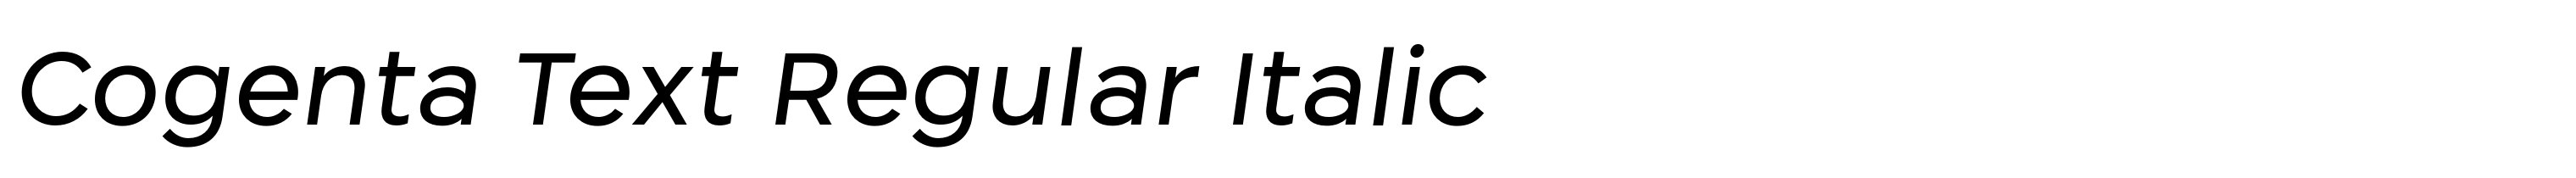 Cogenta Text Regular Italic